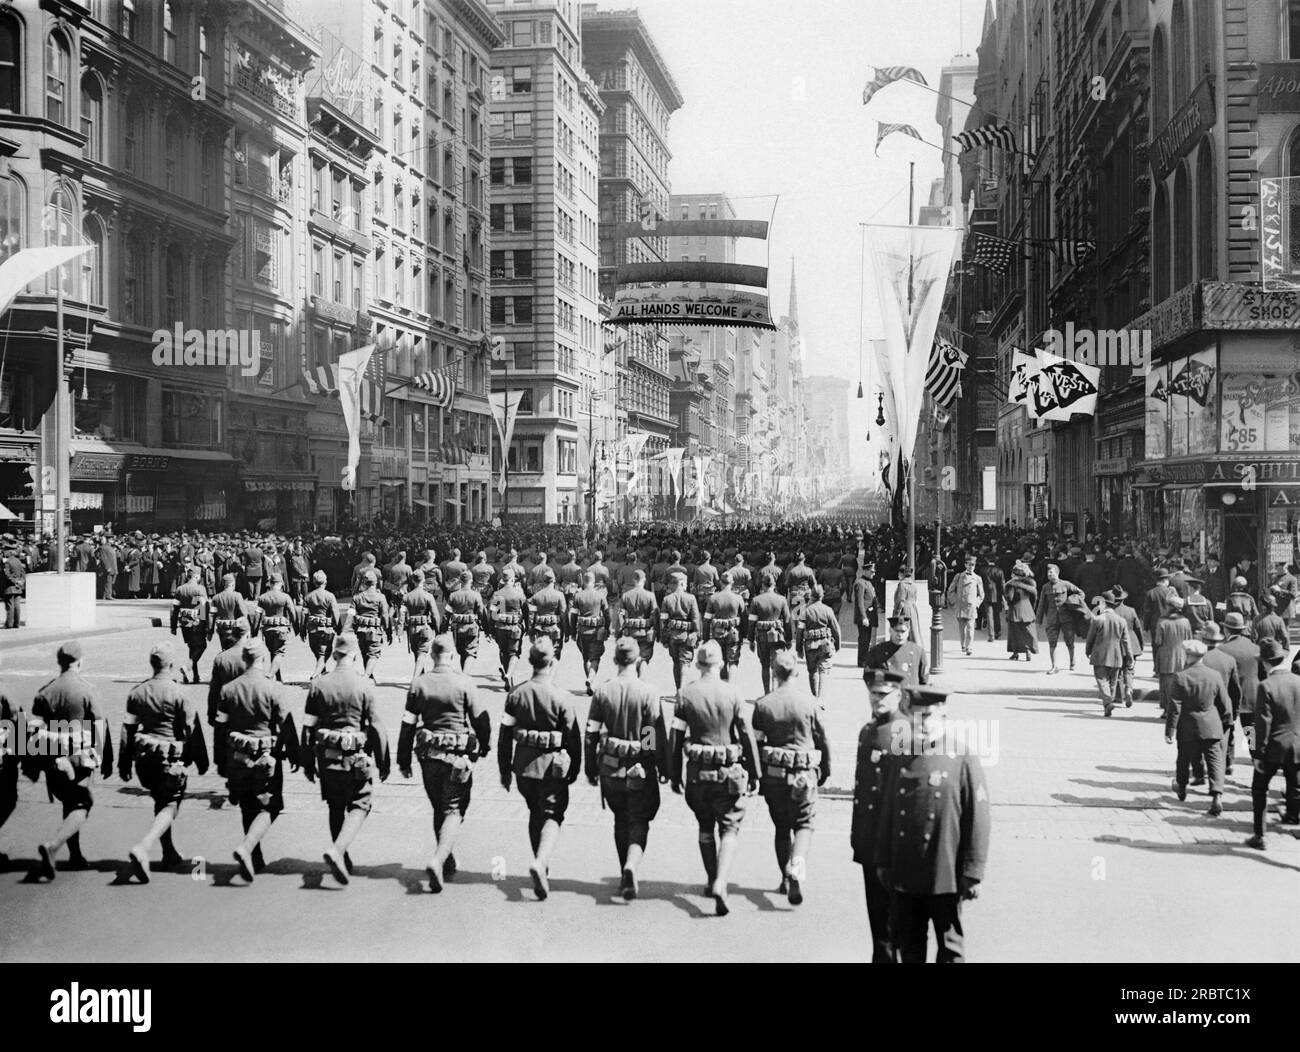 New York, New York : 21 avril 1919 le 332nd Infantry marche sur la Cinquième Avenue sur leur chemin vers Central Park où ils recevront des médailles de l'attaché italien pour avoir combattu en Italie contre les Autrichiens. Banque D'Images